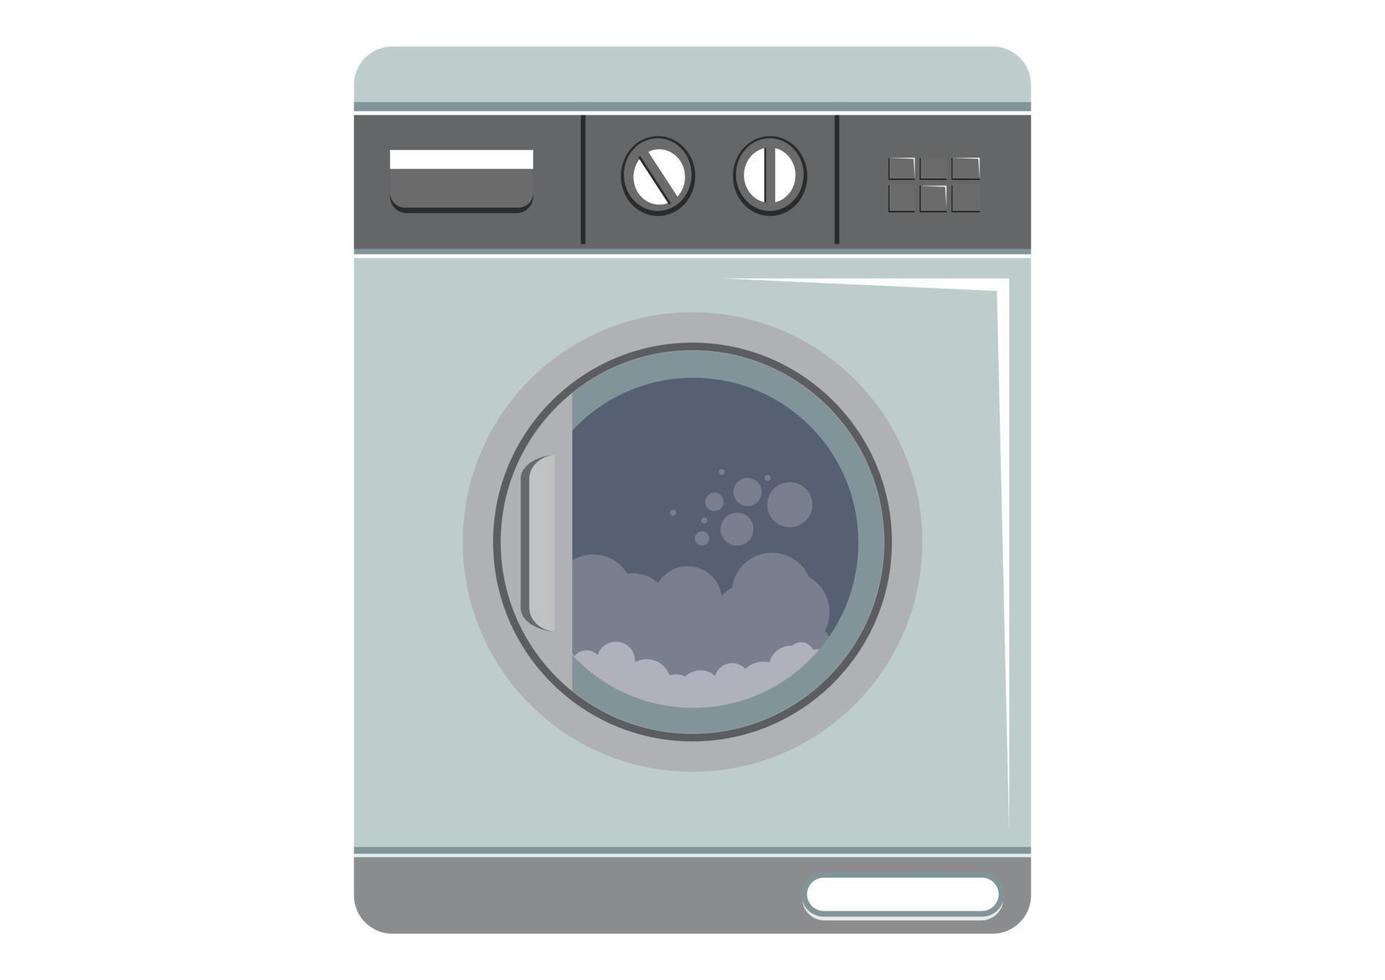 lavadora para las tareas del hogar. lavadero moderno. ilustración vectorial de lavadora aislada sobre fondo blanco vector